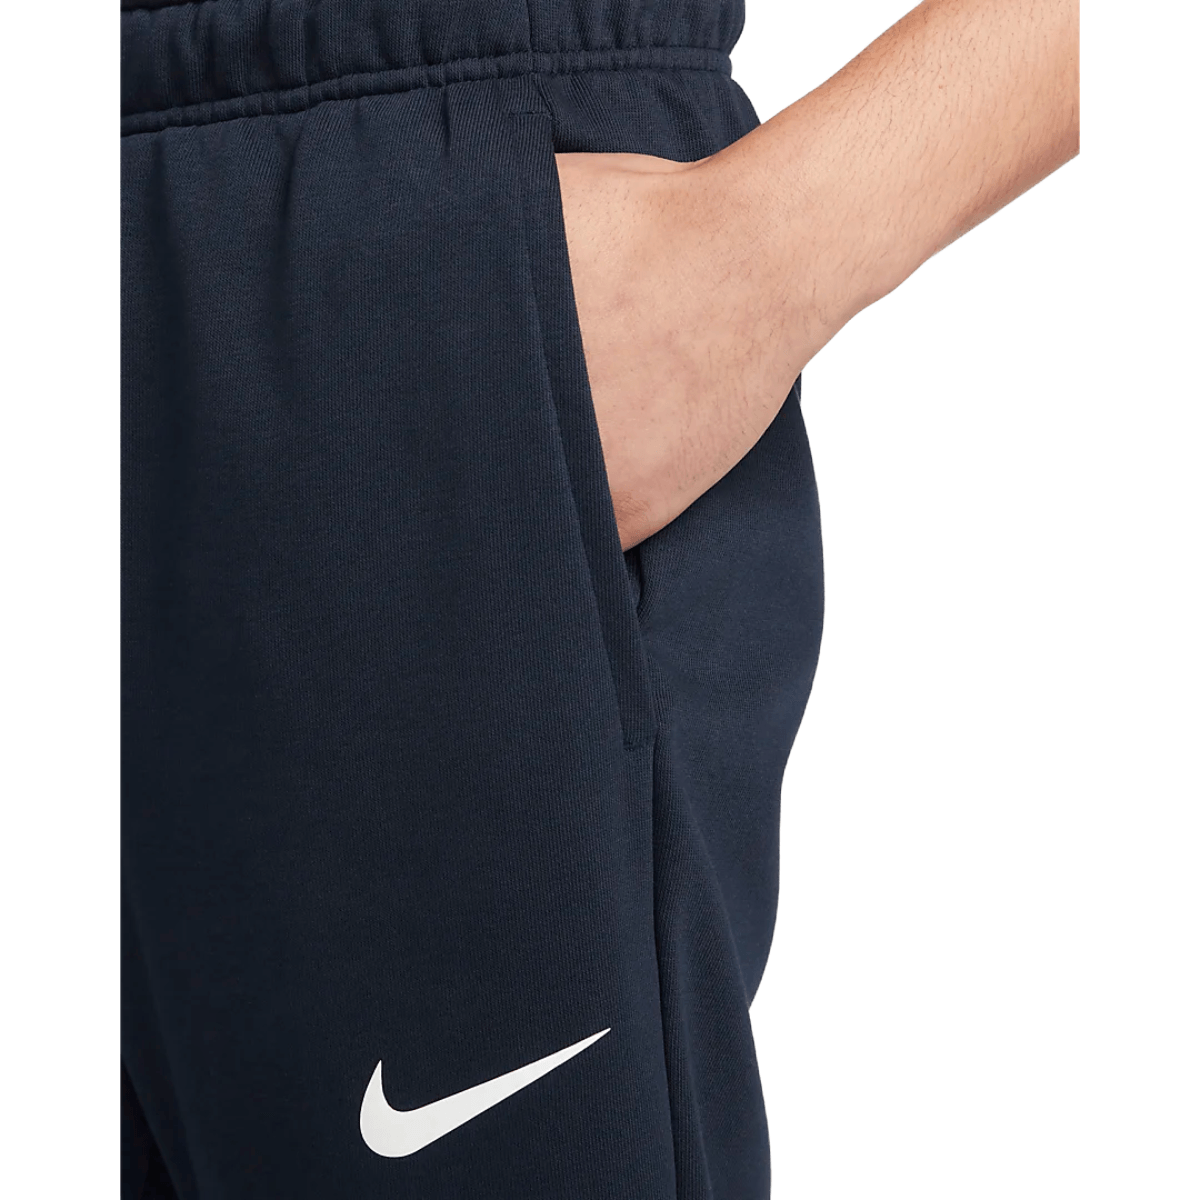 Nike Dri-FIT Tapered Training Pants - Men's 